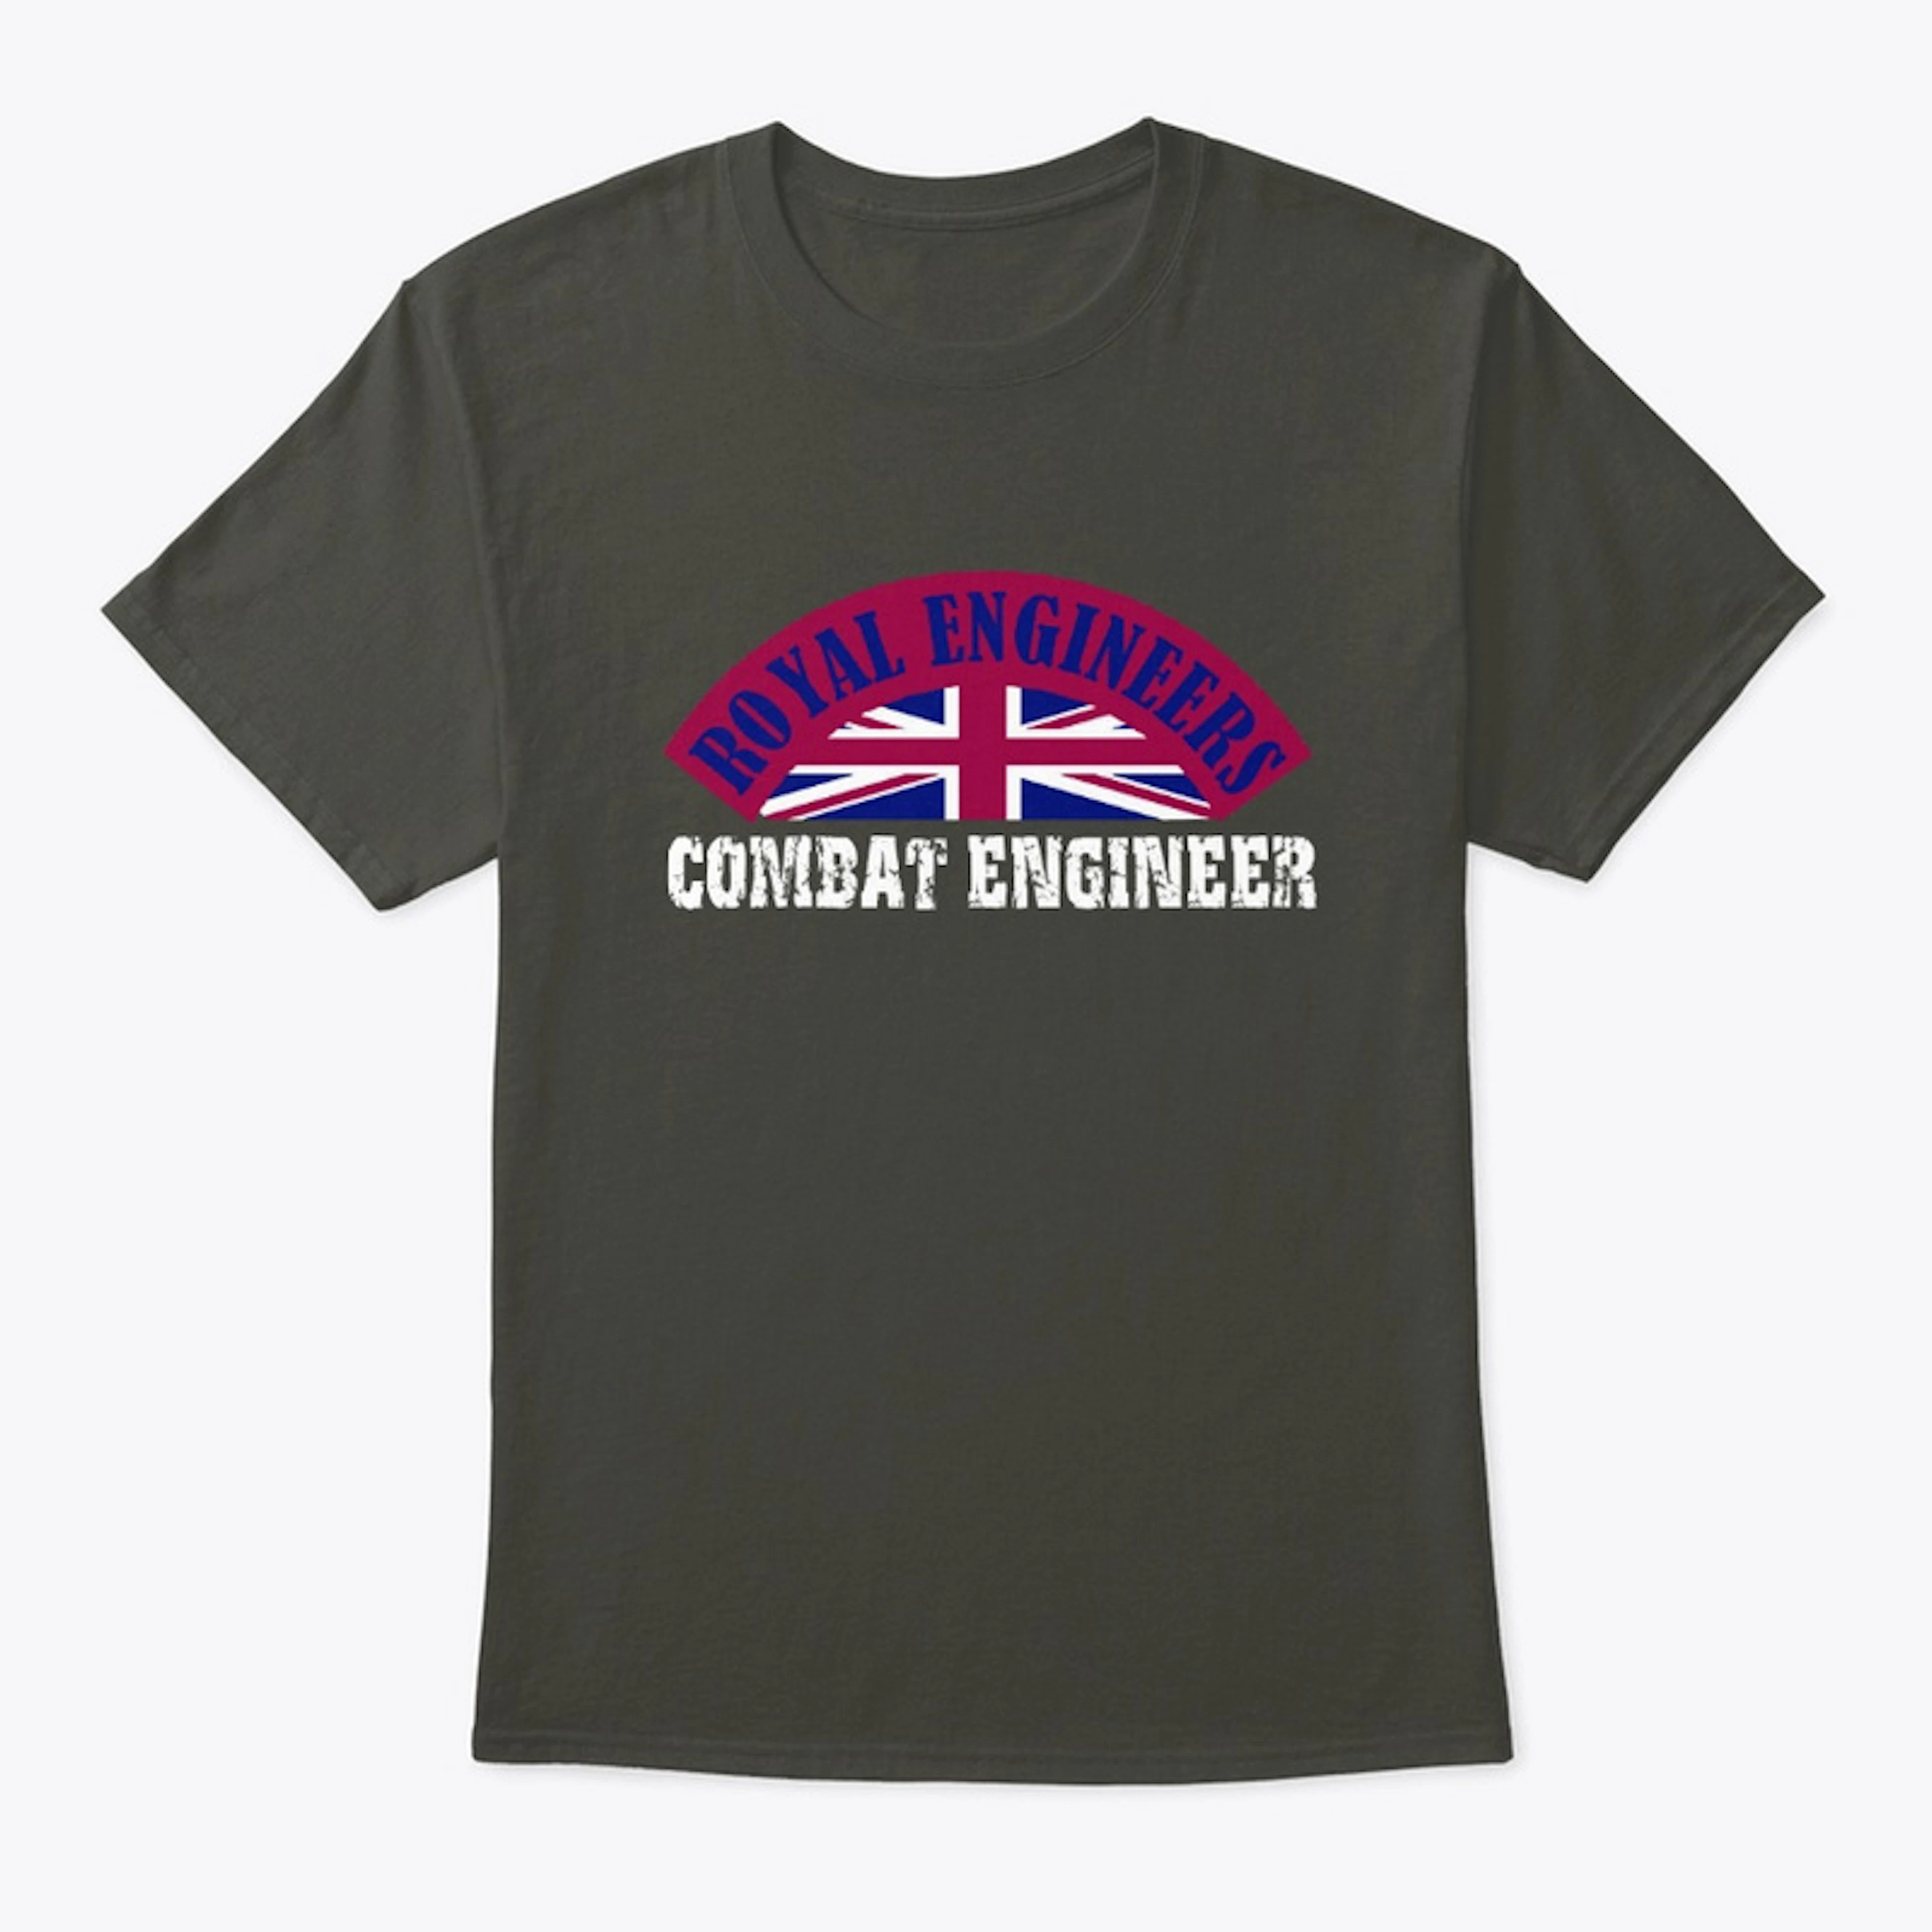 Combat Engineer. Royal Engineers